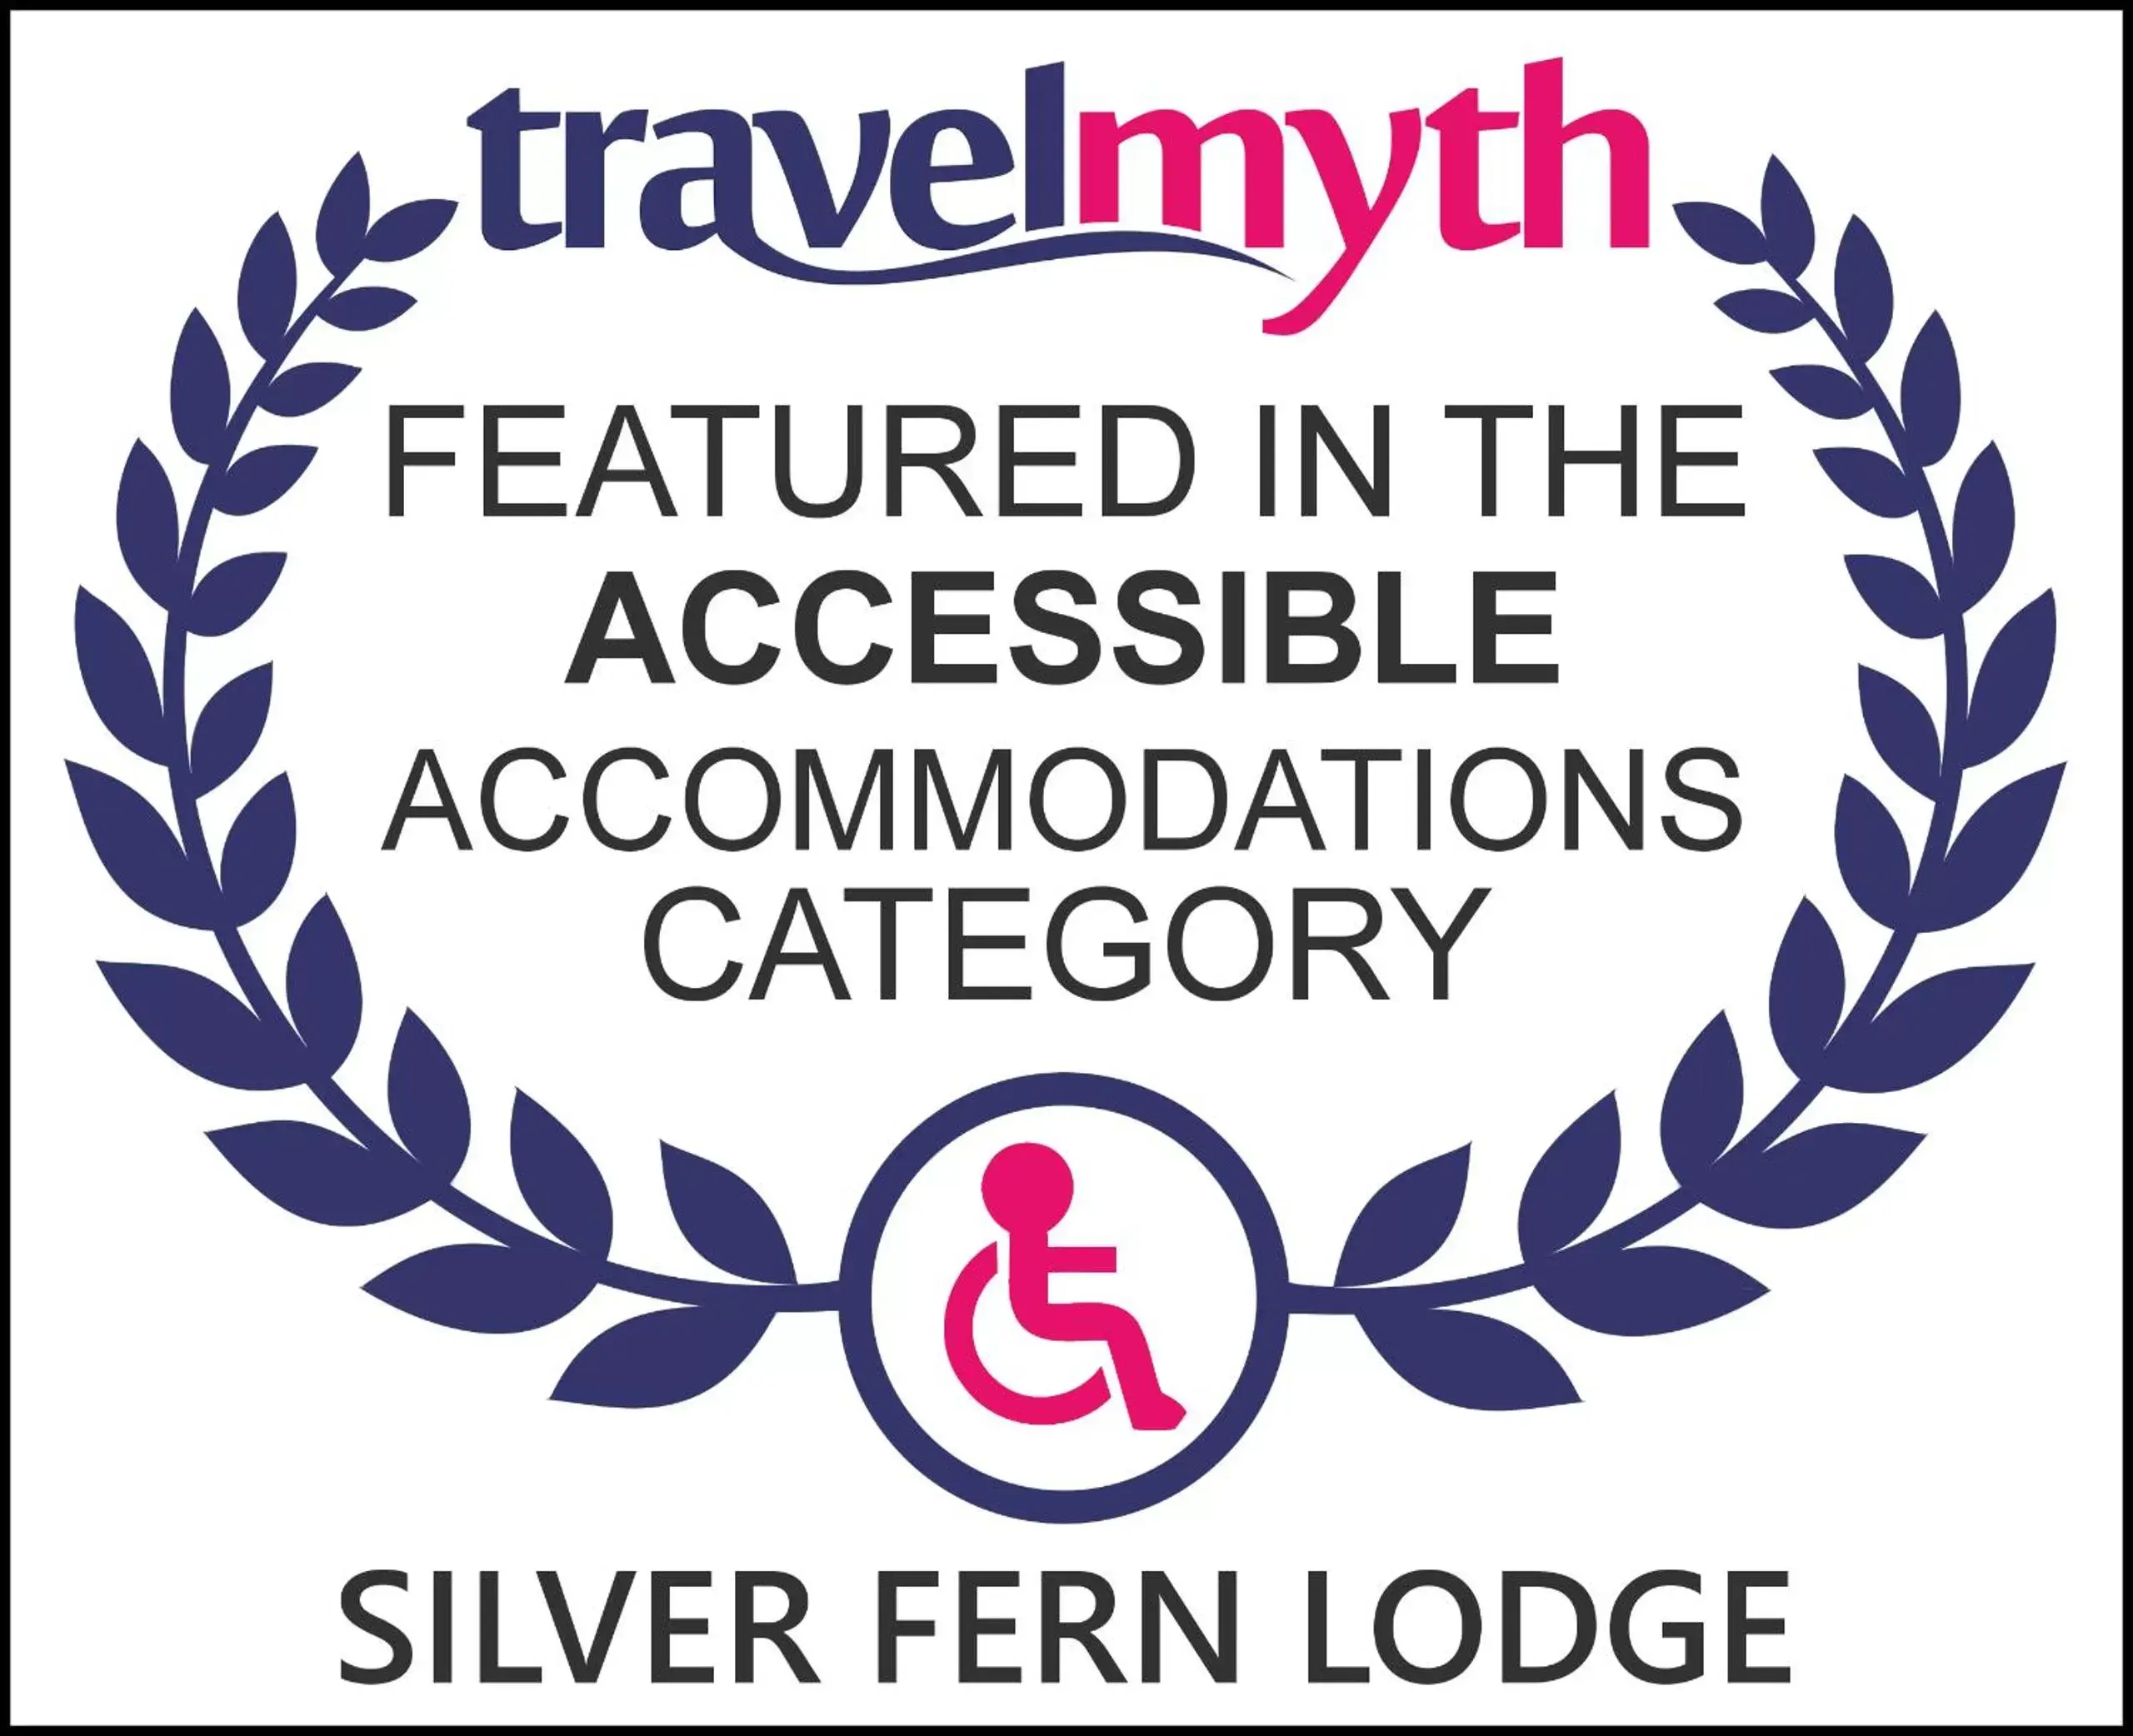 Certificate/Award in Silver Fern Lodge